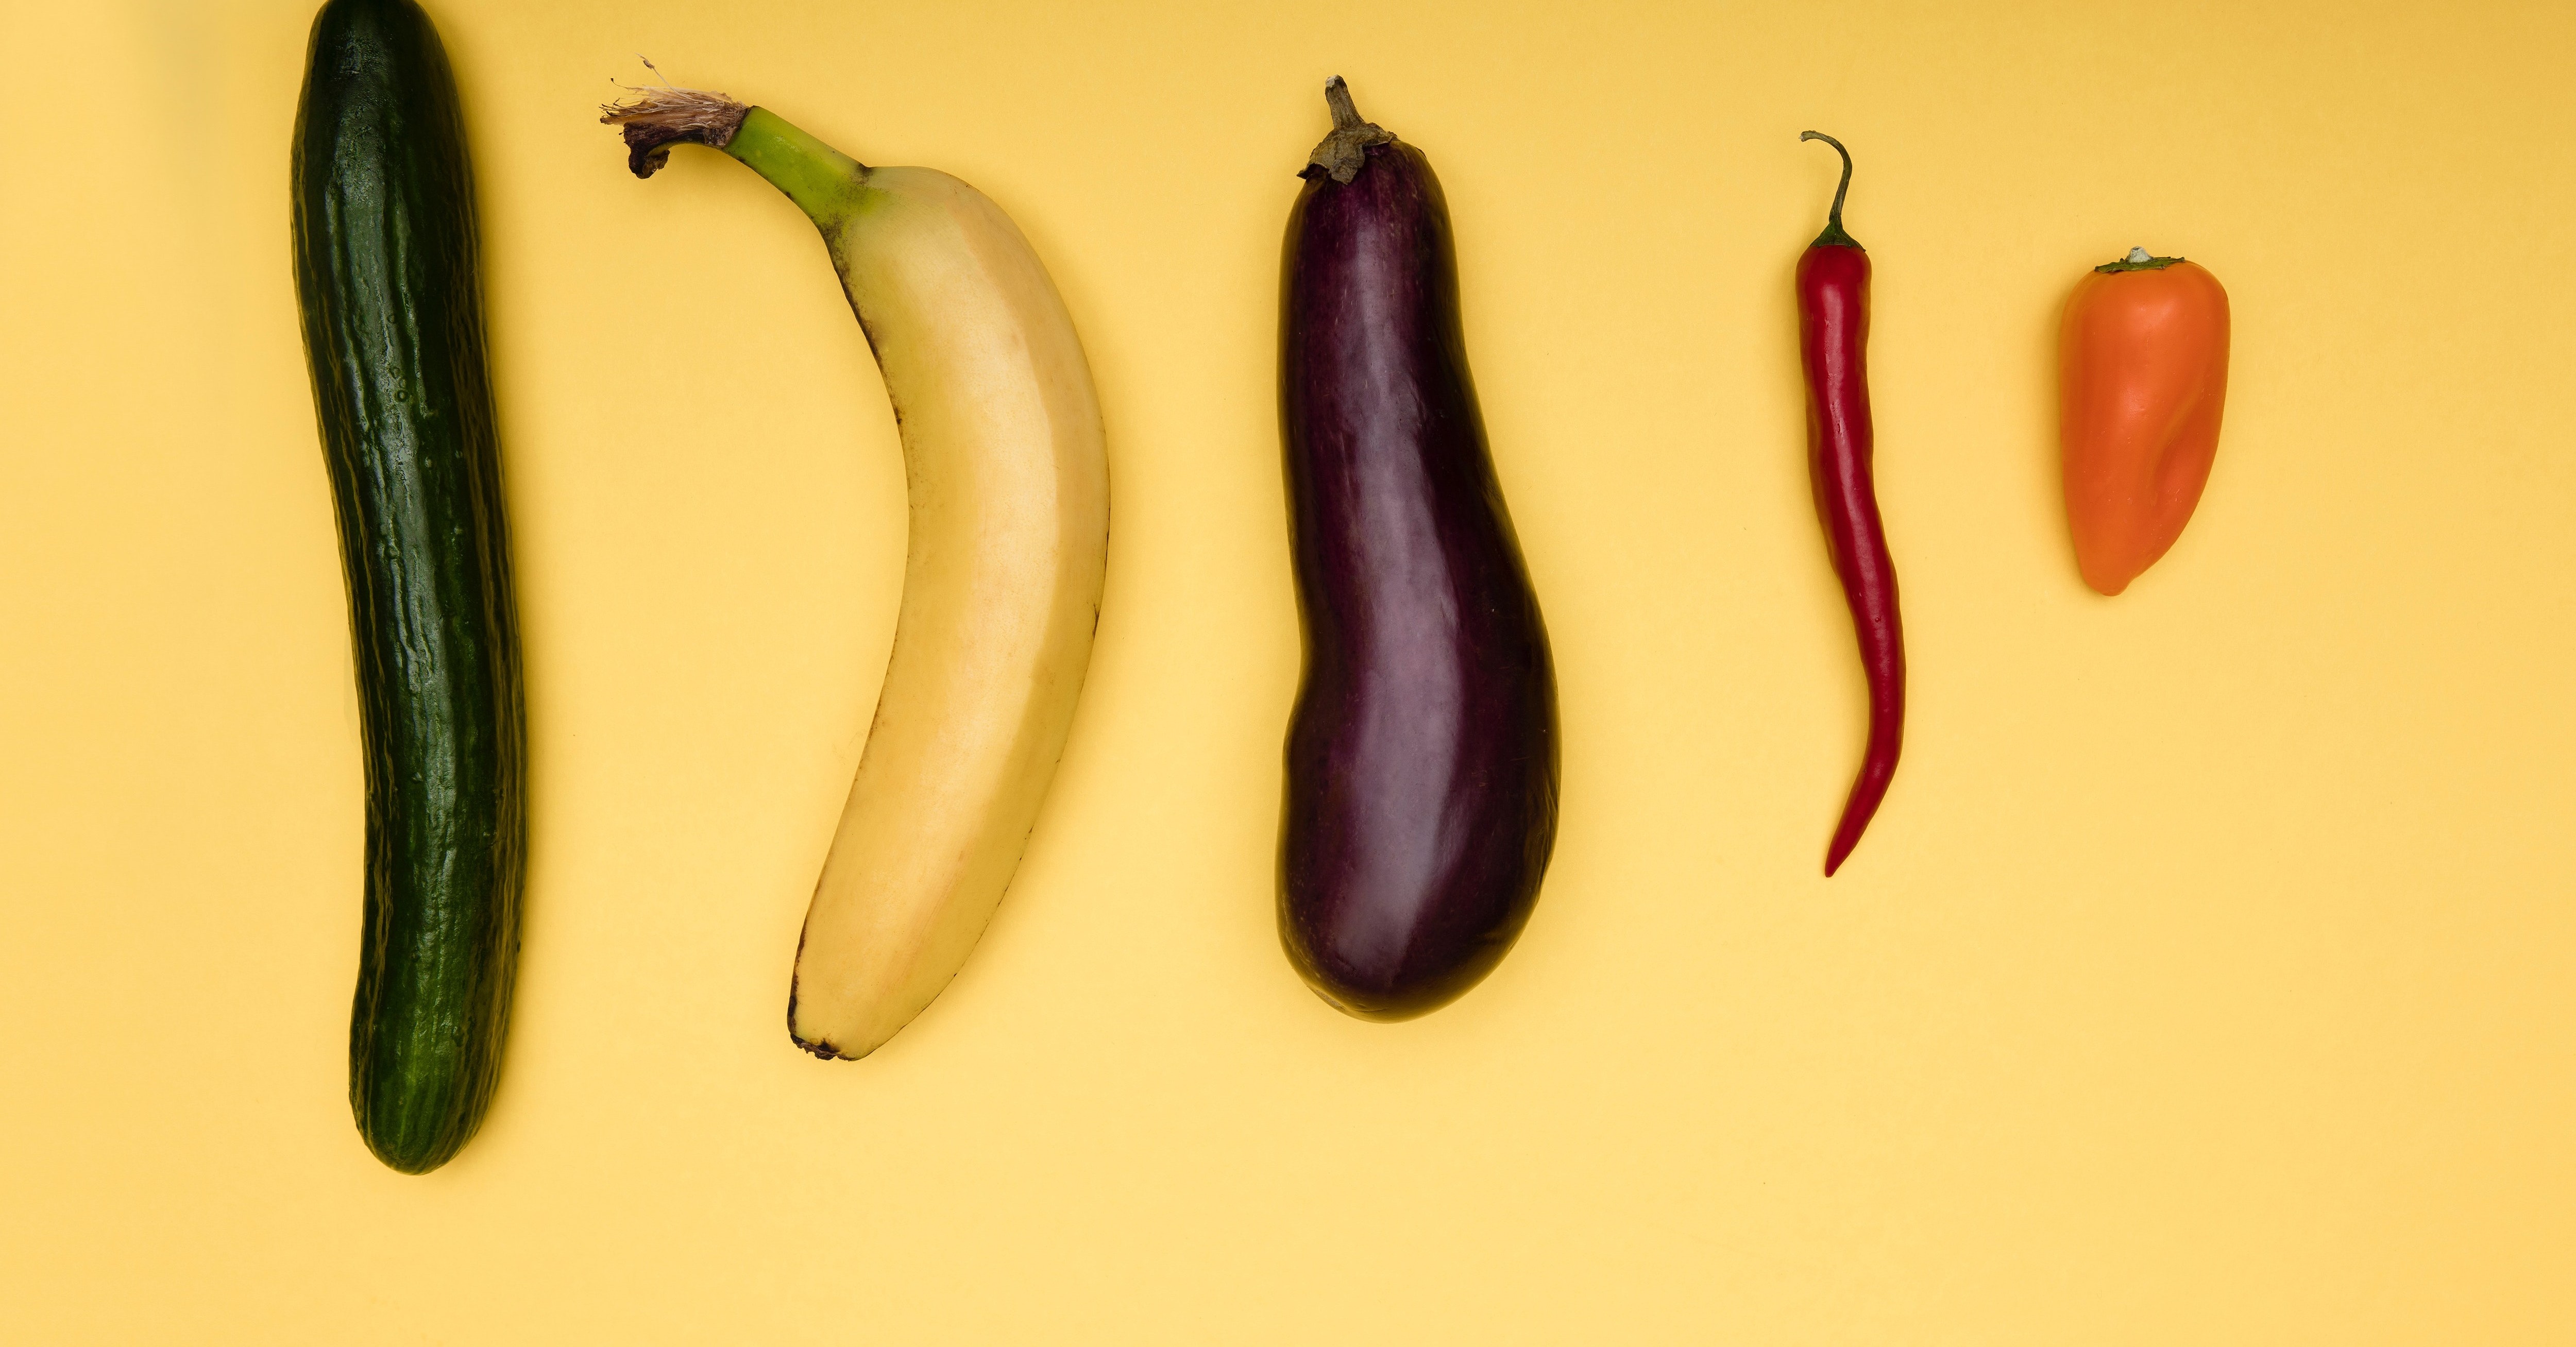 legume asemănătoare penisului